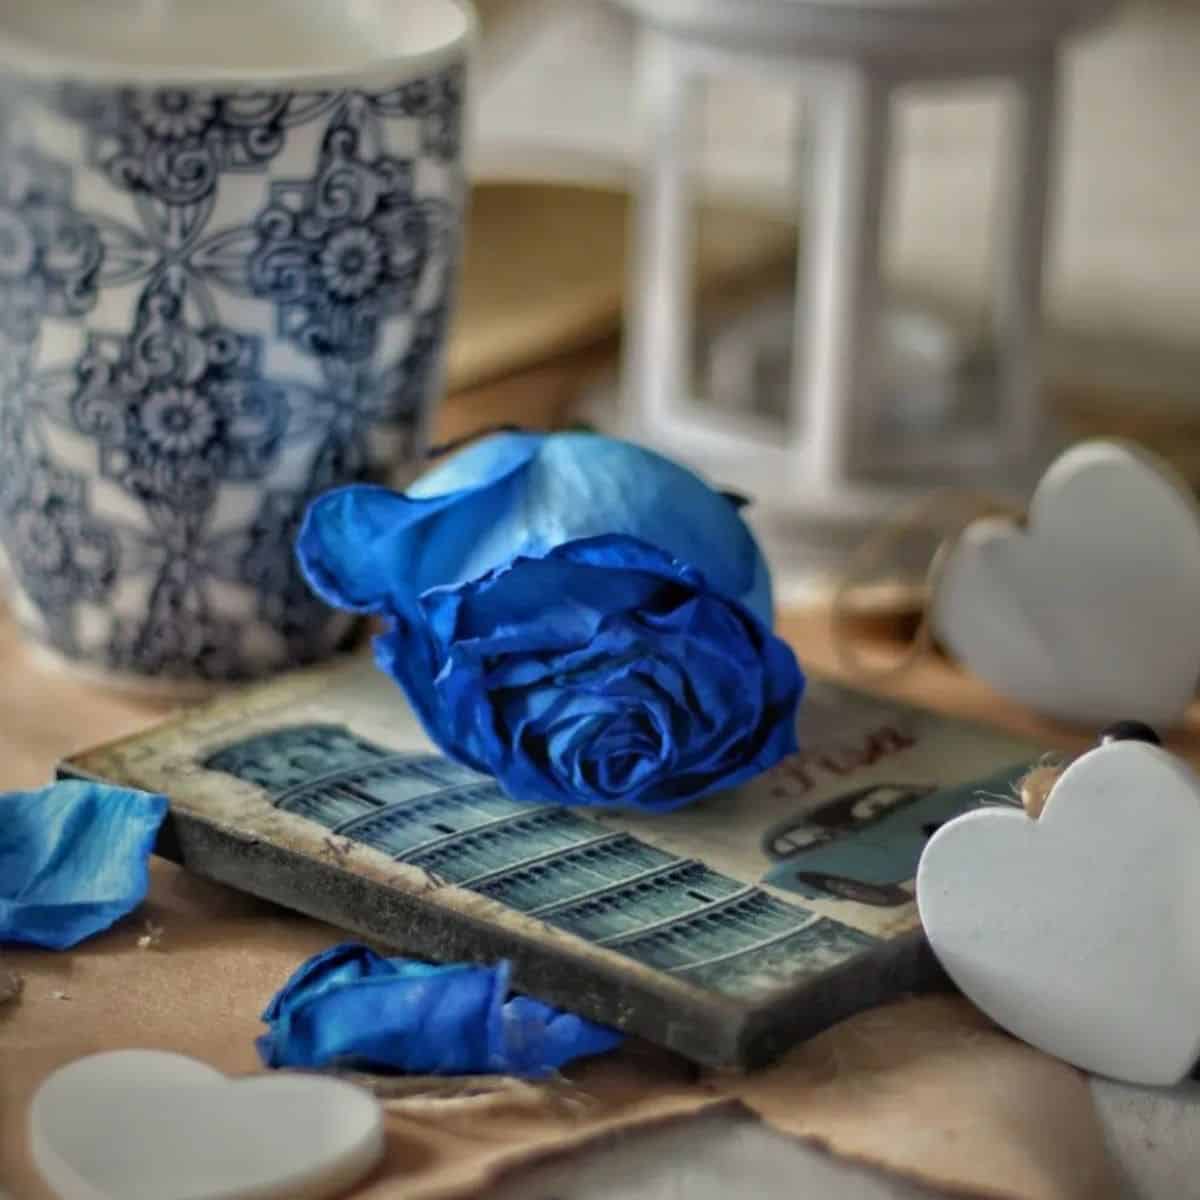 Hoa hồng xanh có ý nghĩa gì?